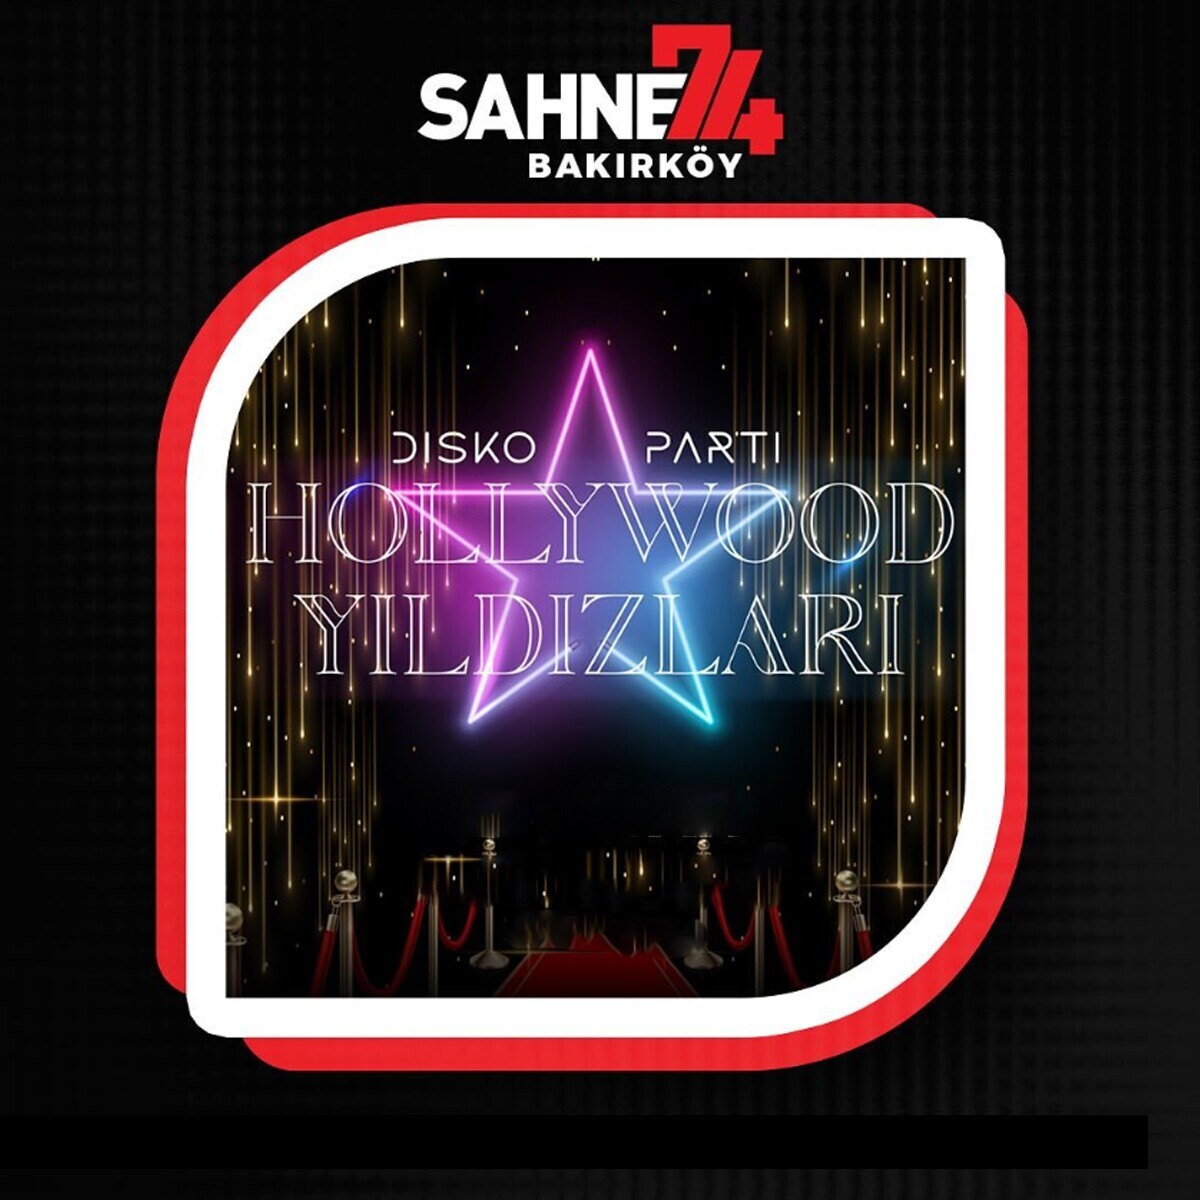 11 Mayıs Hollywood Yıldızları Disko Parti Bakırköy Sahne 74 Konser Bileti